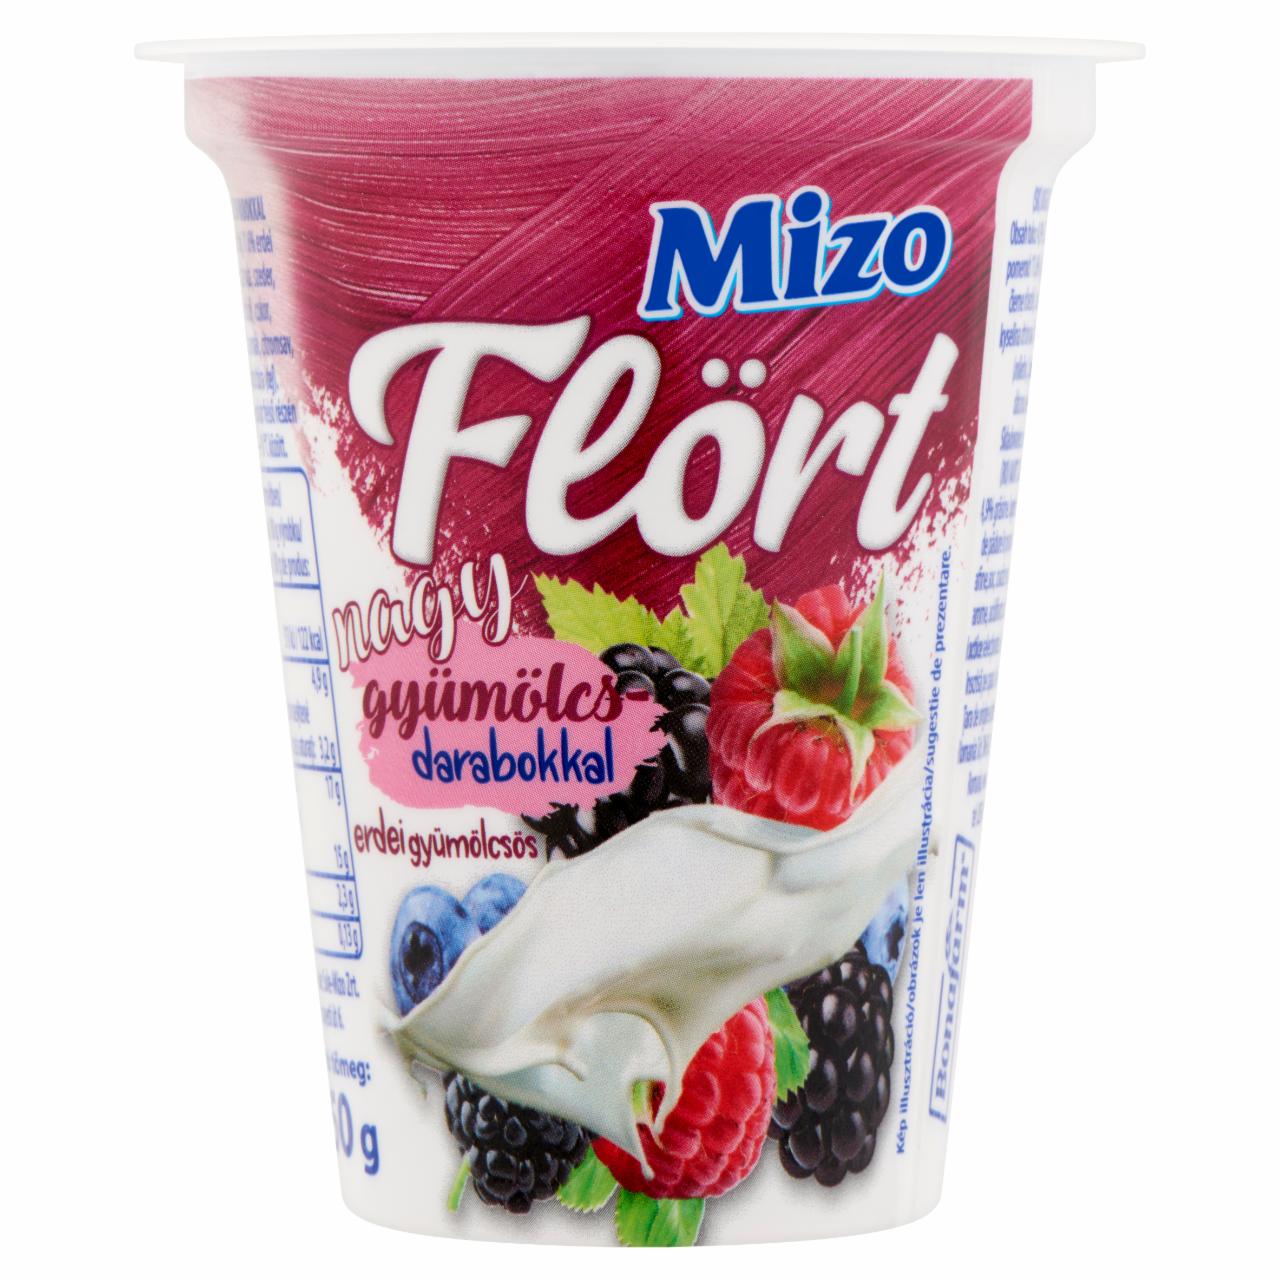 Képek - Mizo Flört erdei gyümölcsös joghurt nagy gyümölcsdarabokkal 150 g